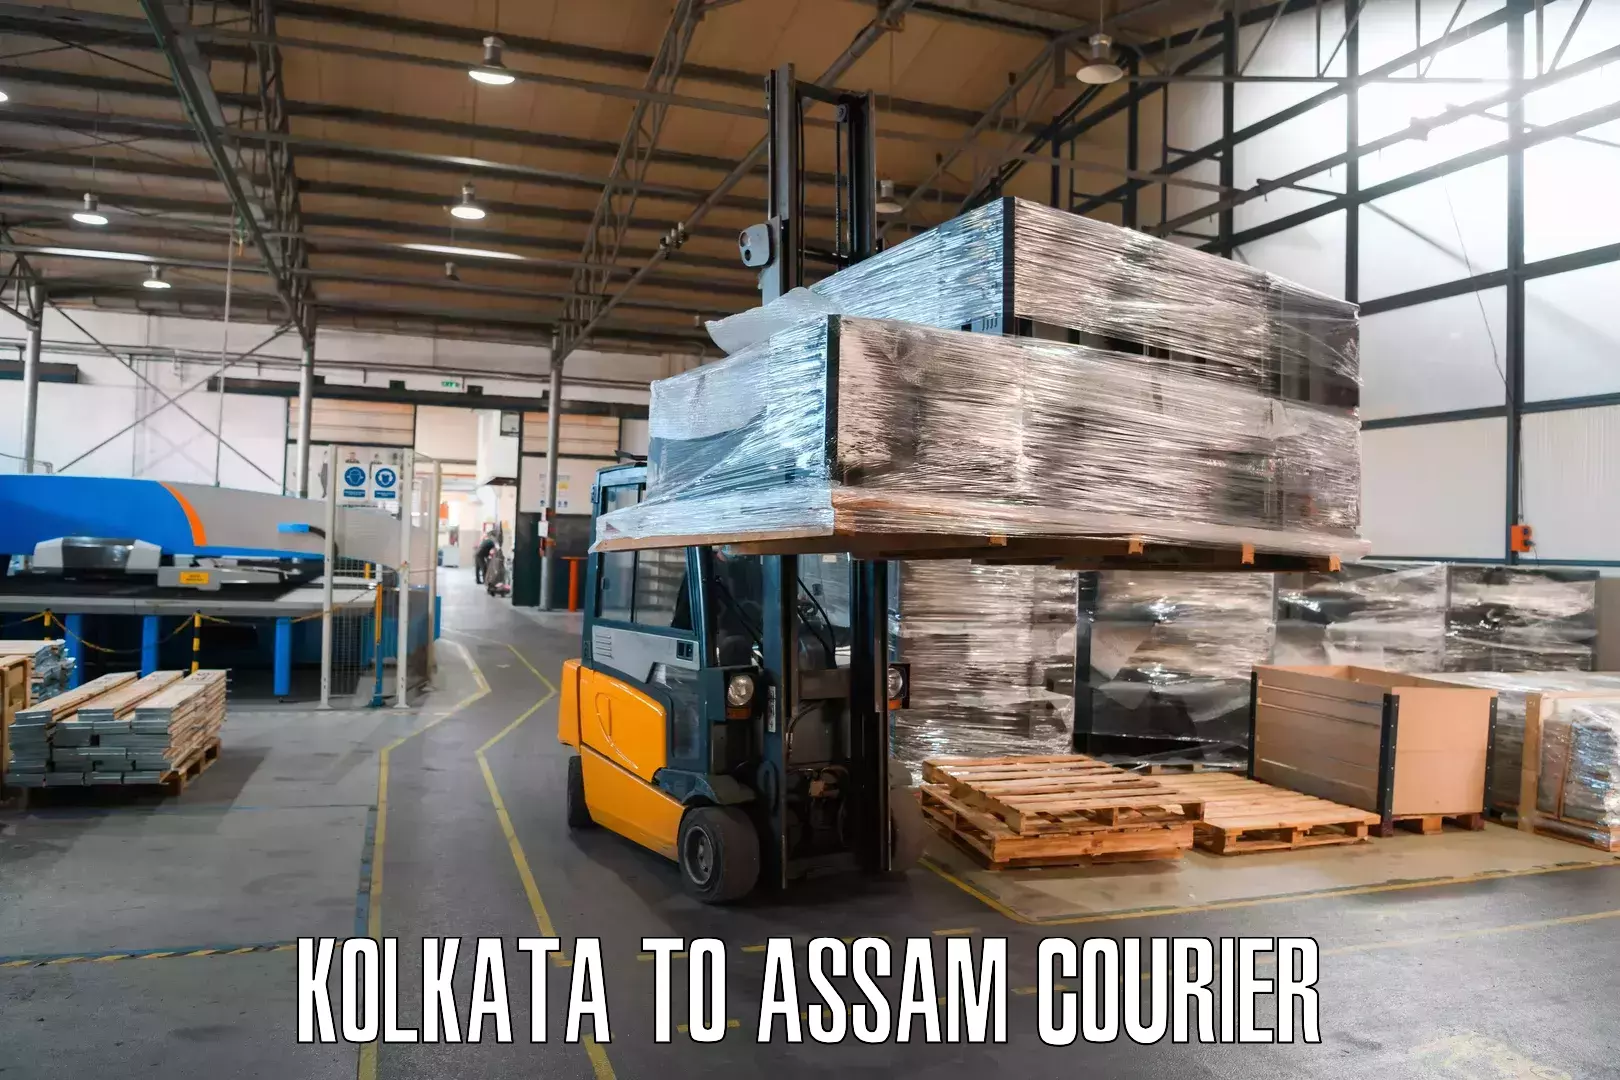 Pharmaceutical courier Kolkata to Silchar